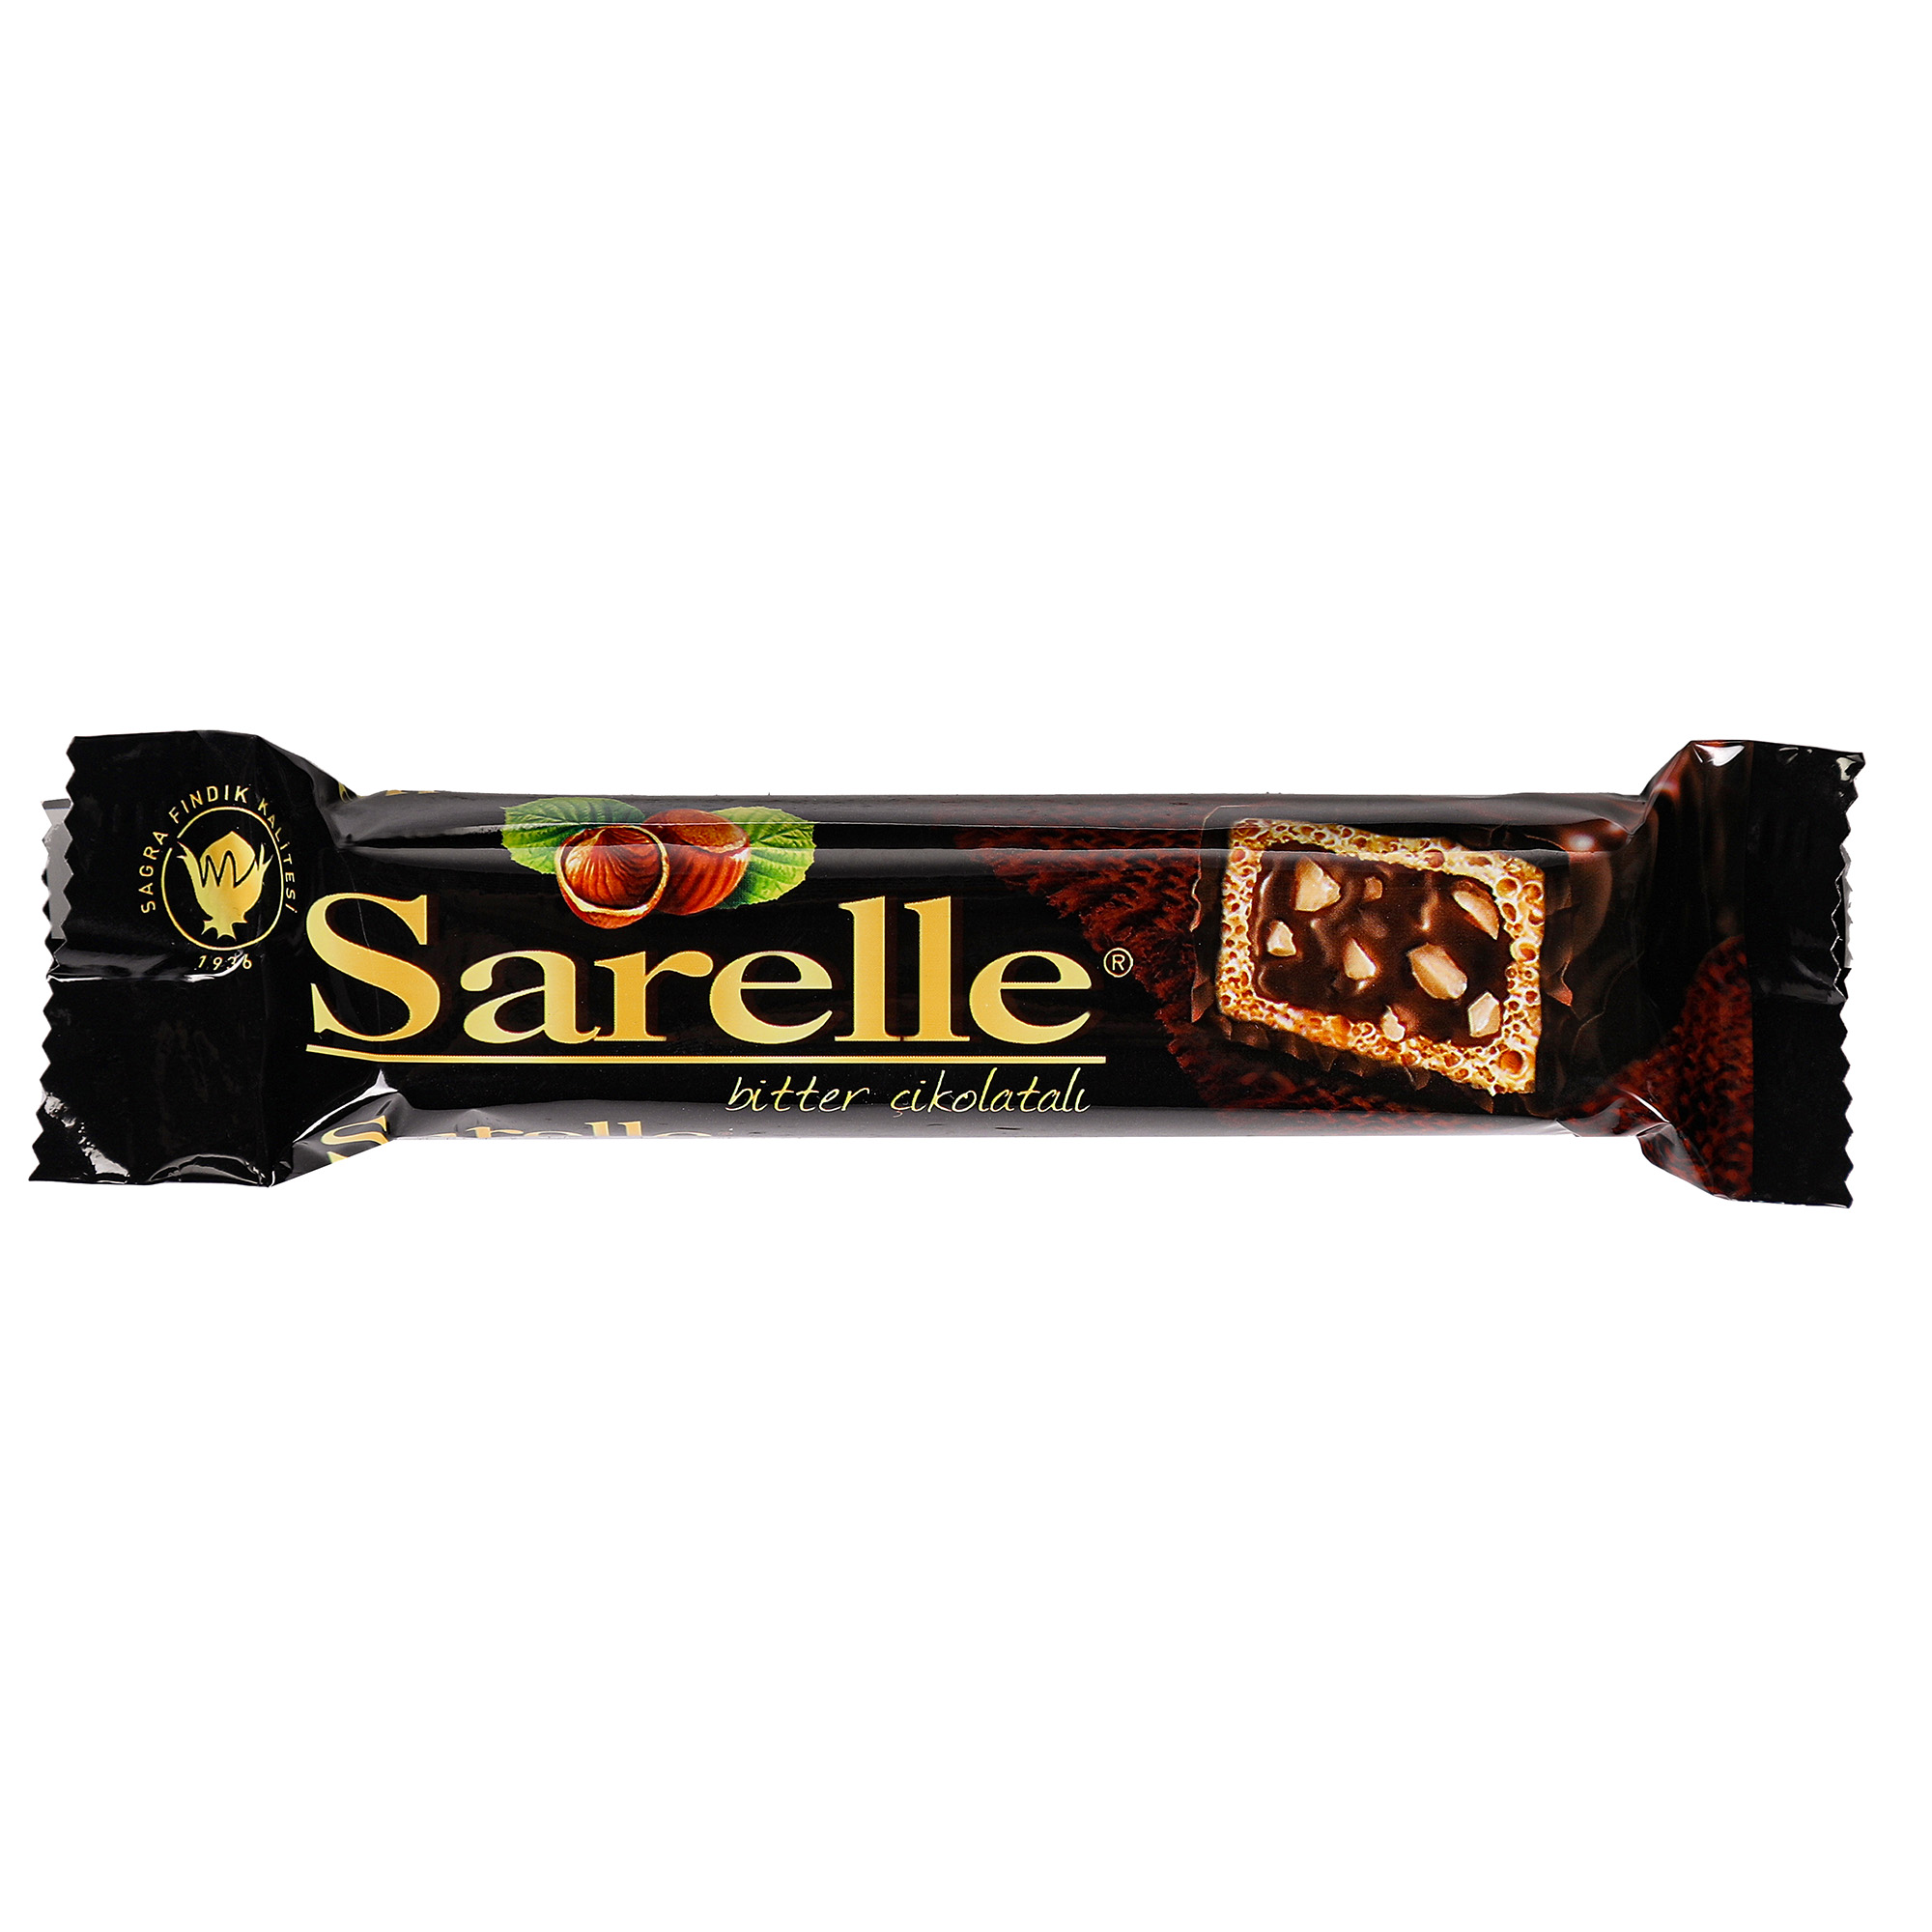 Вафли Sarelle с орехом и шоколадынм кремом в темном шоколаде, 33 г вафли loacker с орехом 175 г